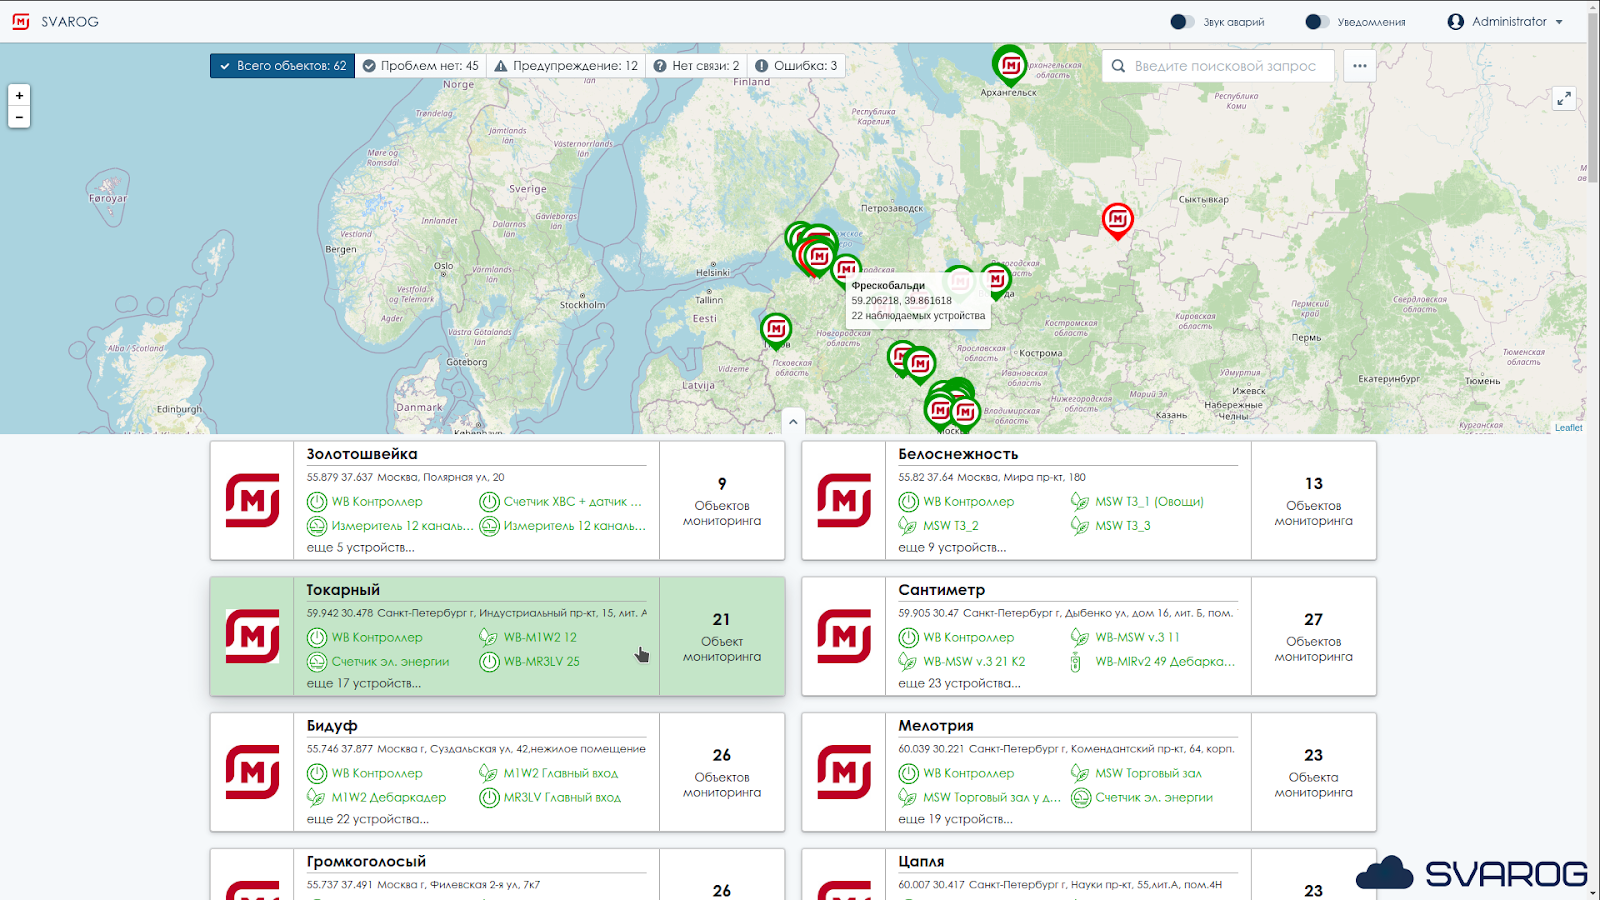 Обзорная карта магазинов в сервисно-аналитической платформе SVAROG